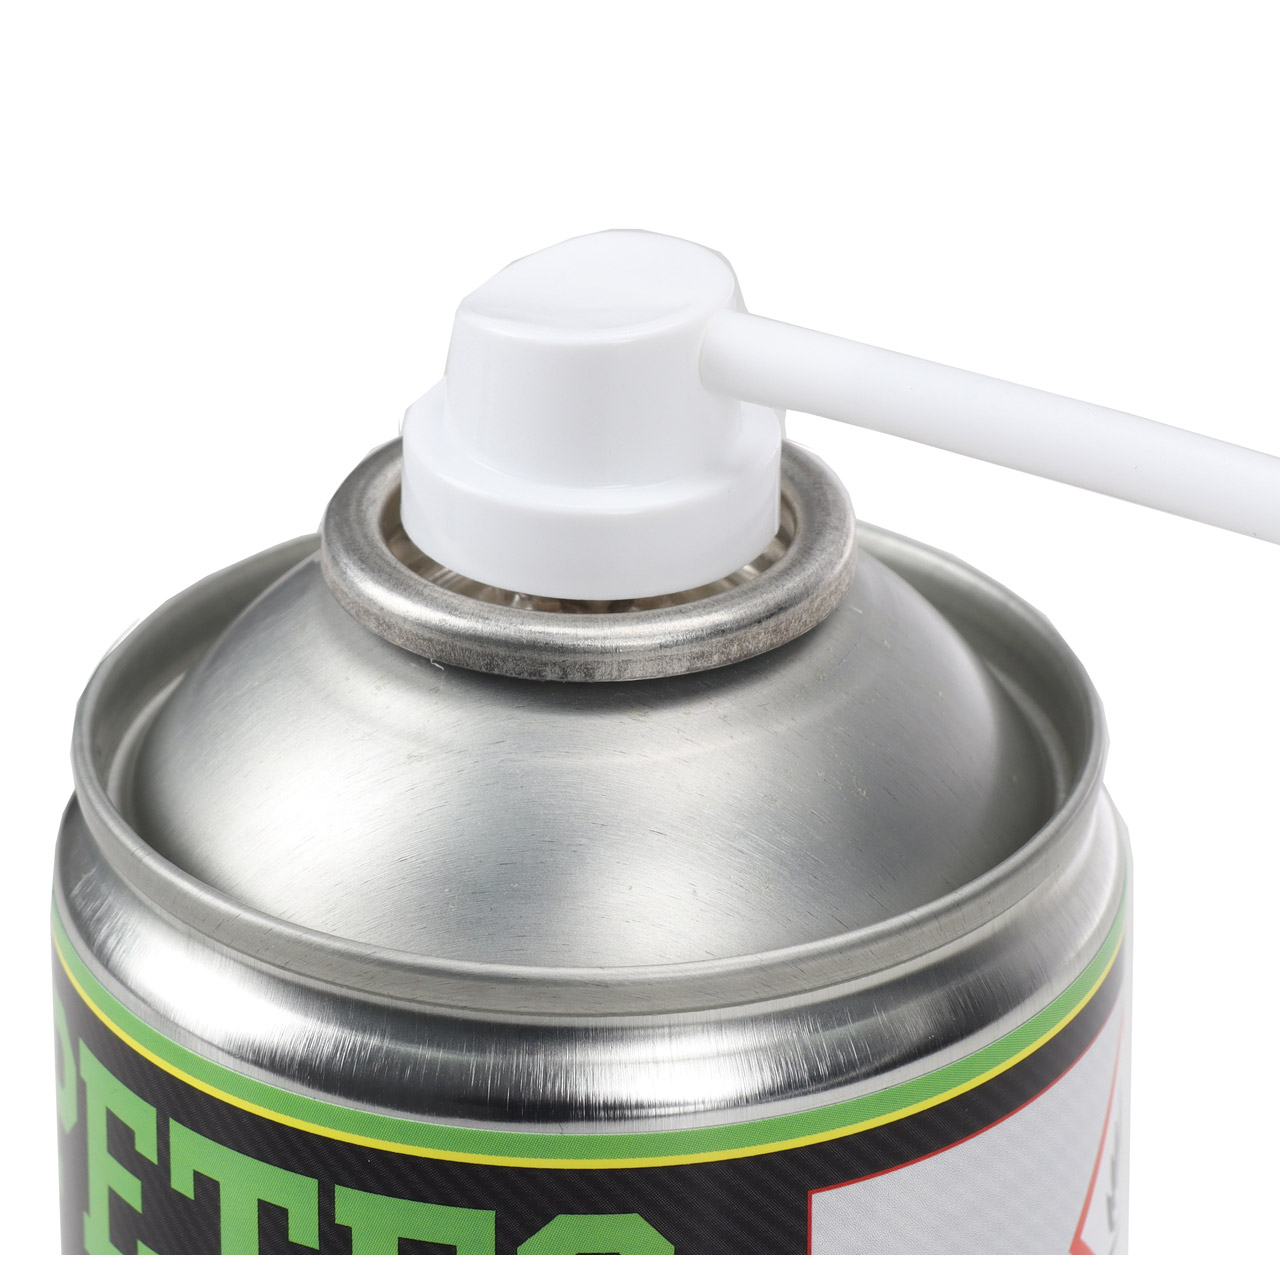 PETEC 72550 Dieselpartikelfilterreiniger Rußpartikelfilter Reiniger Spray 400ml